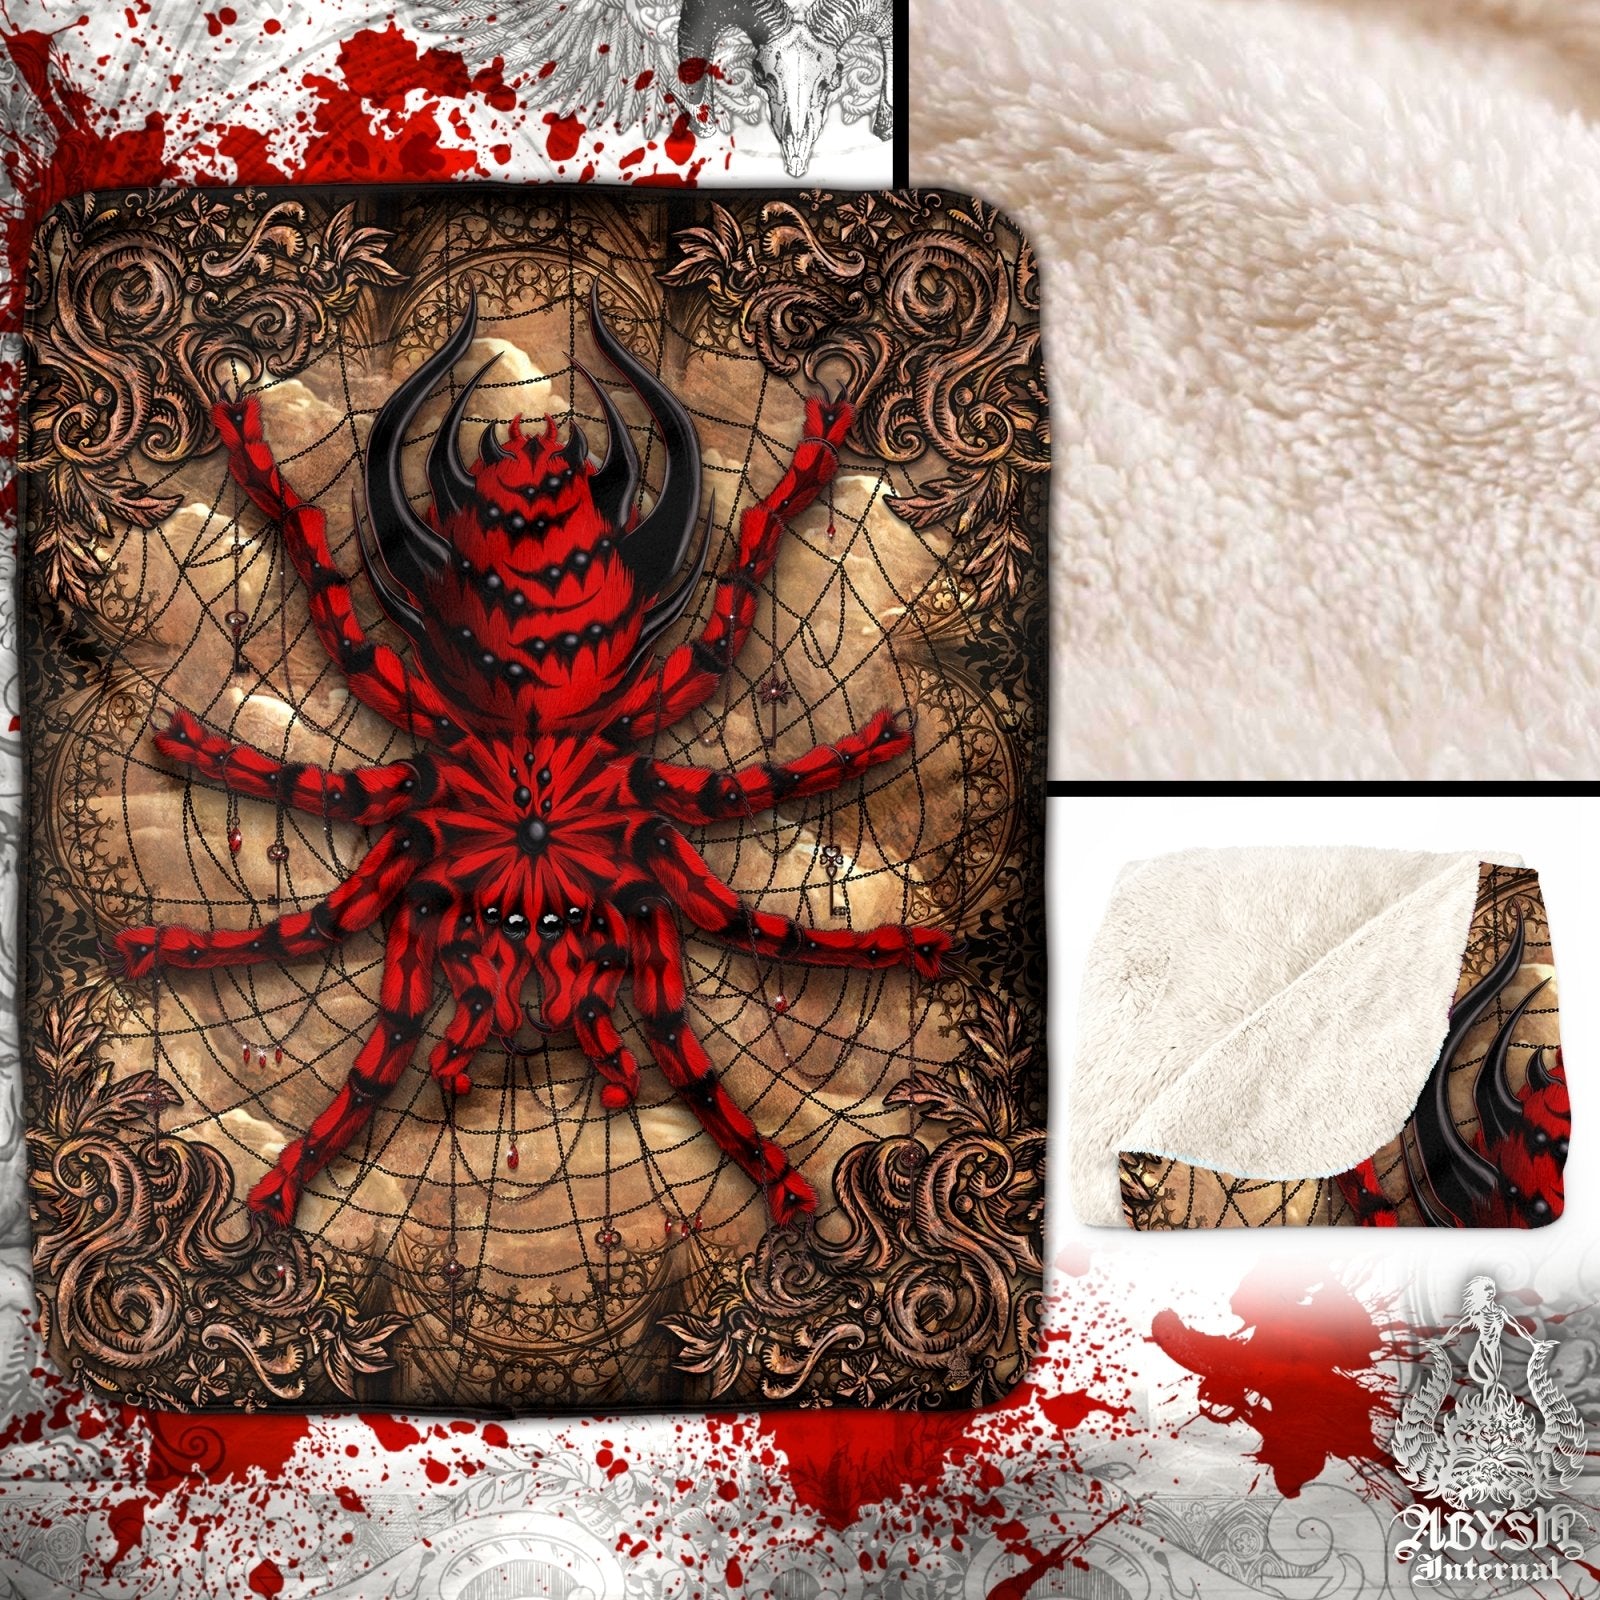 Gothic Throw Fleece Blanket, Halloween Gift, Horror Home Decor, Alternative Art Gift - Spider, Goth Grunge Beige, Tarantula Art - Abysm Internal